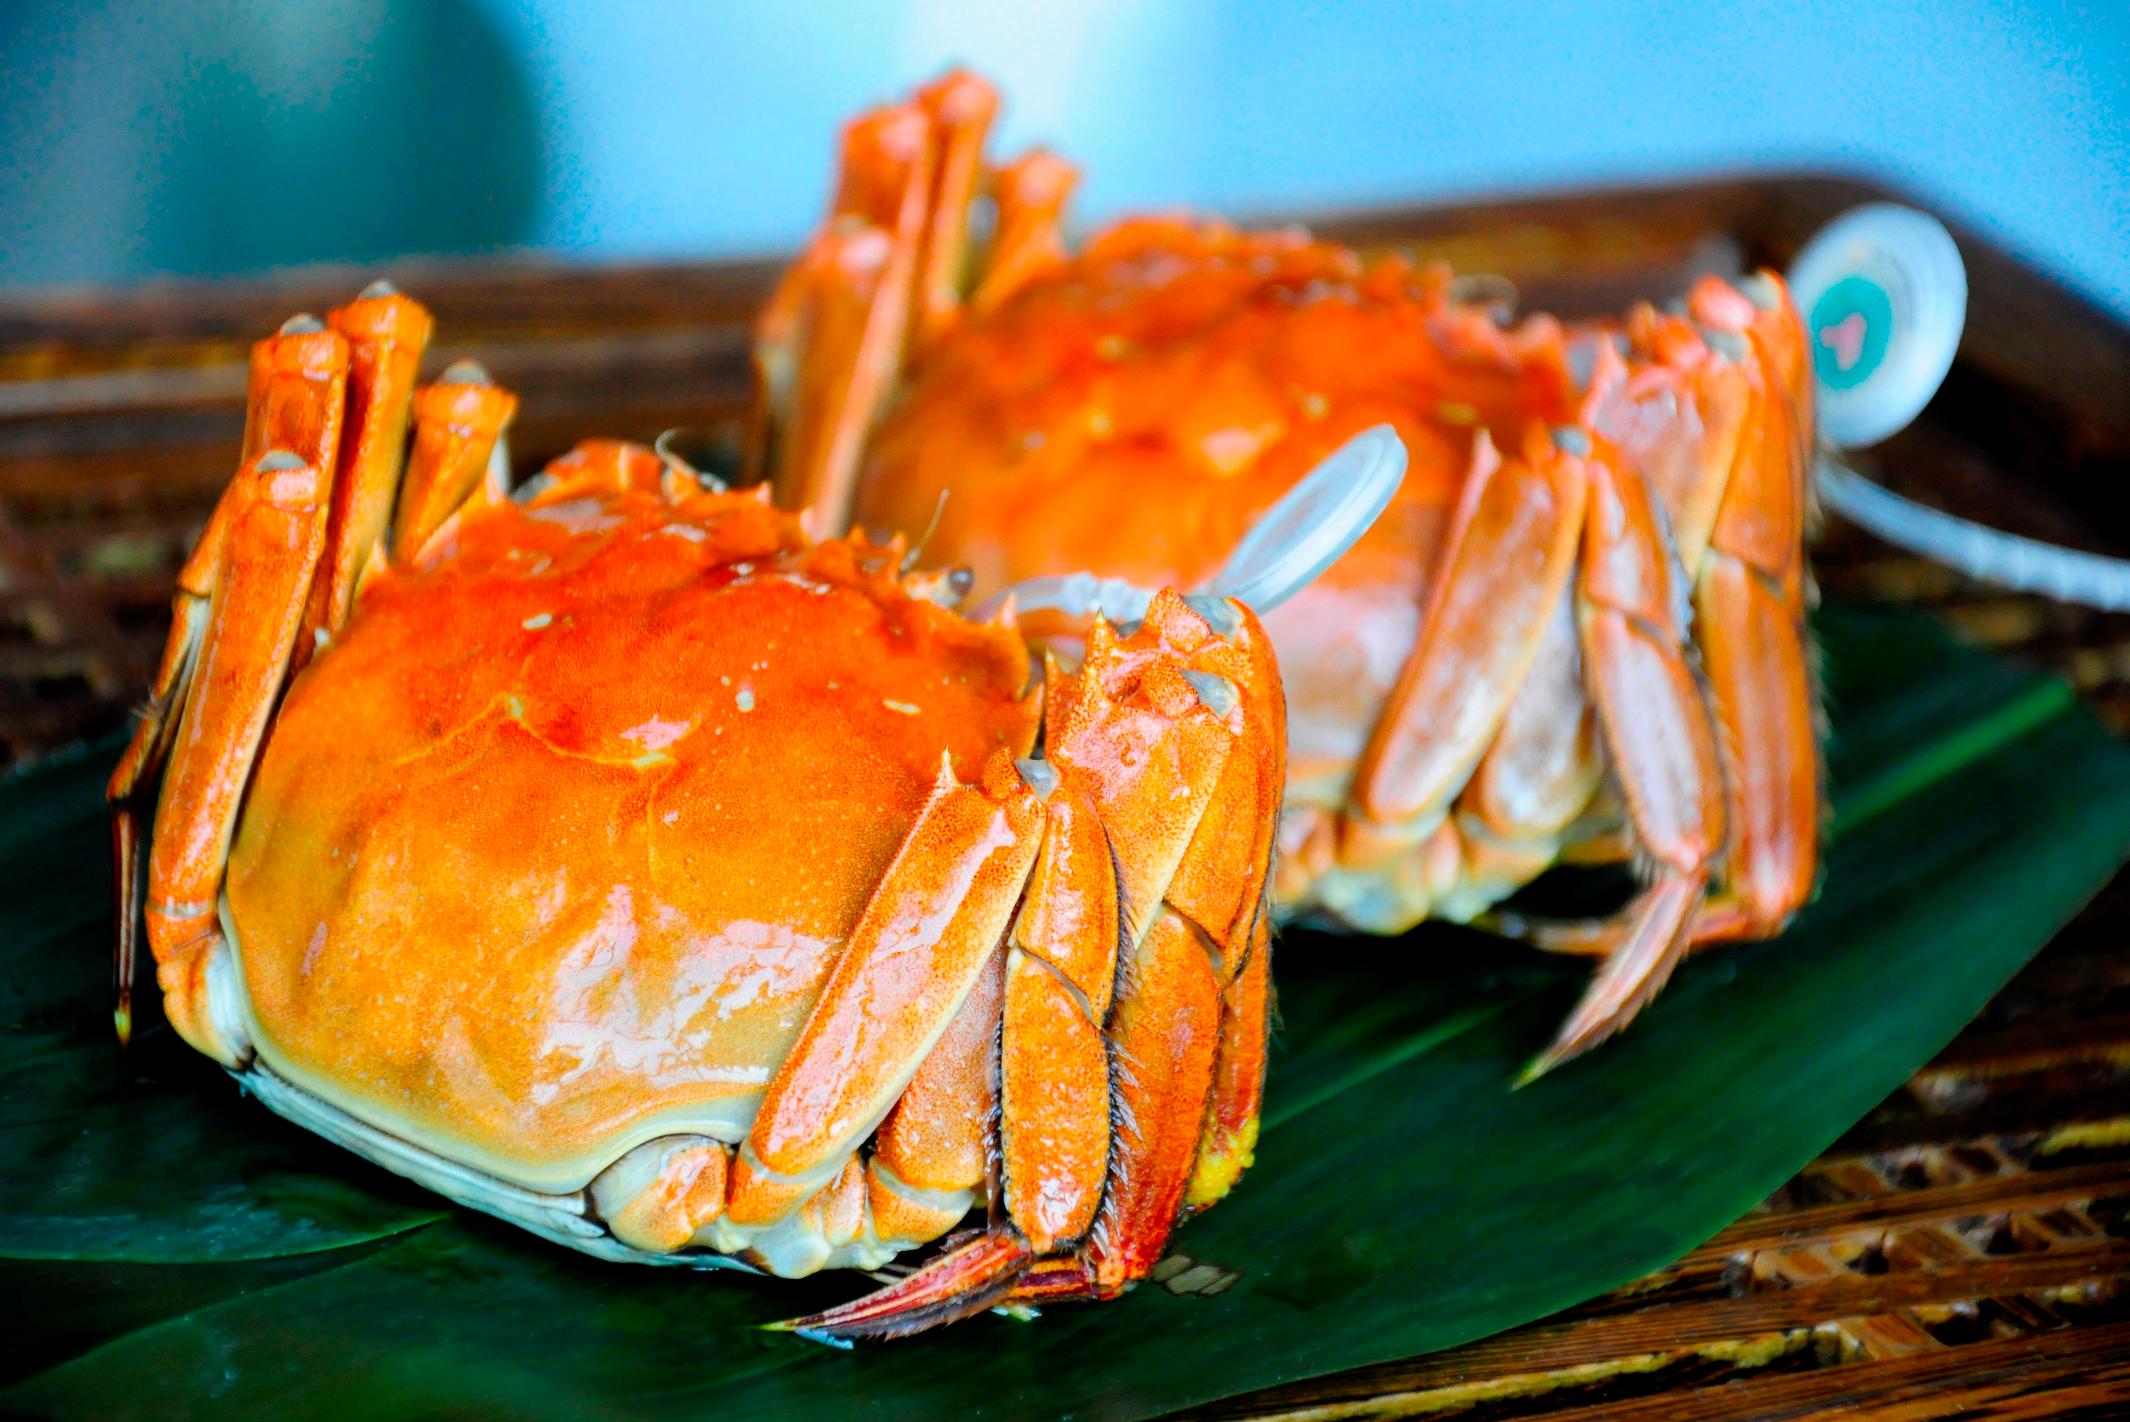 吃螃蟹的禁忌是什么